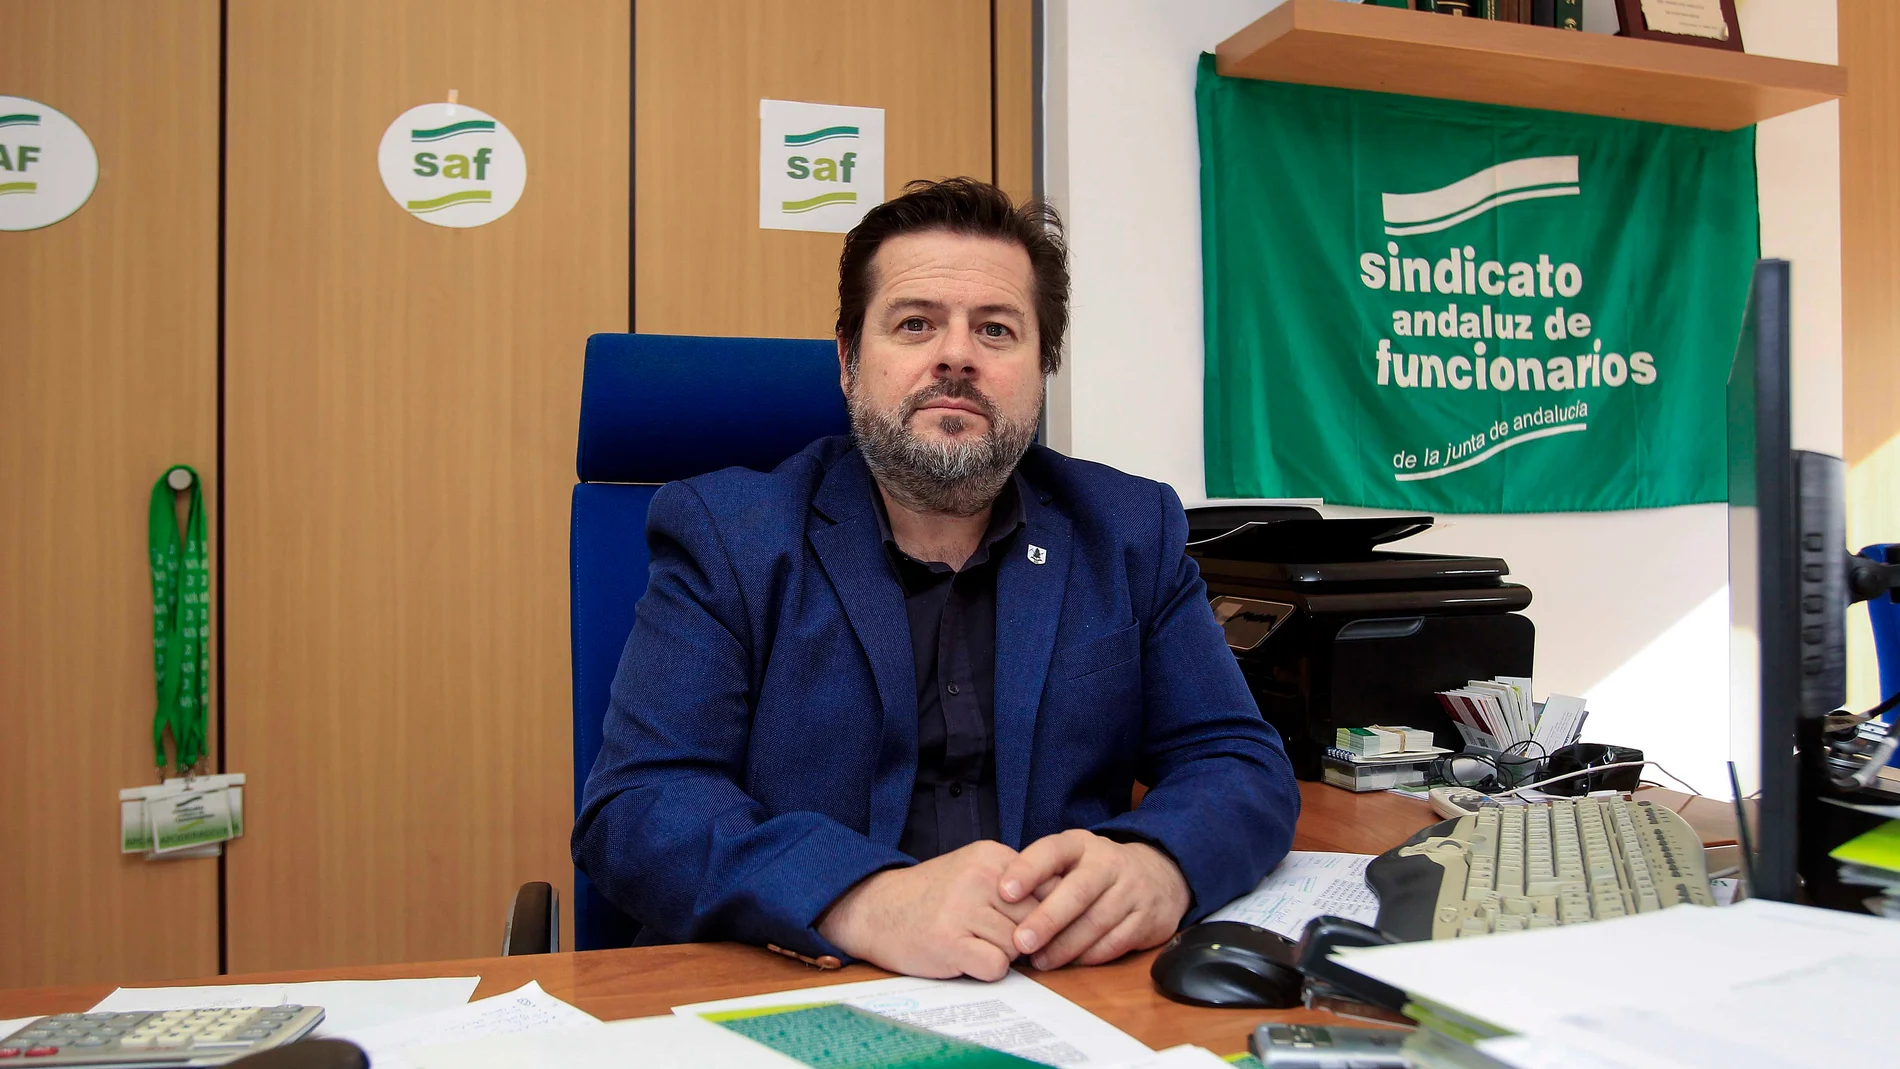 El presidente del Sindicato Andaluz de Funcionarios (SAF) es Carlos Sánchez, en la imagen en su despacho